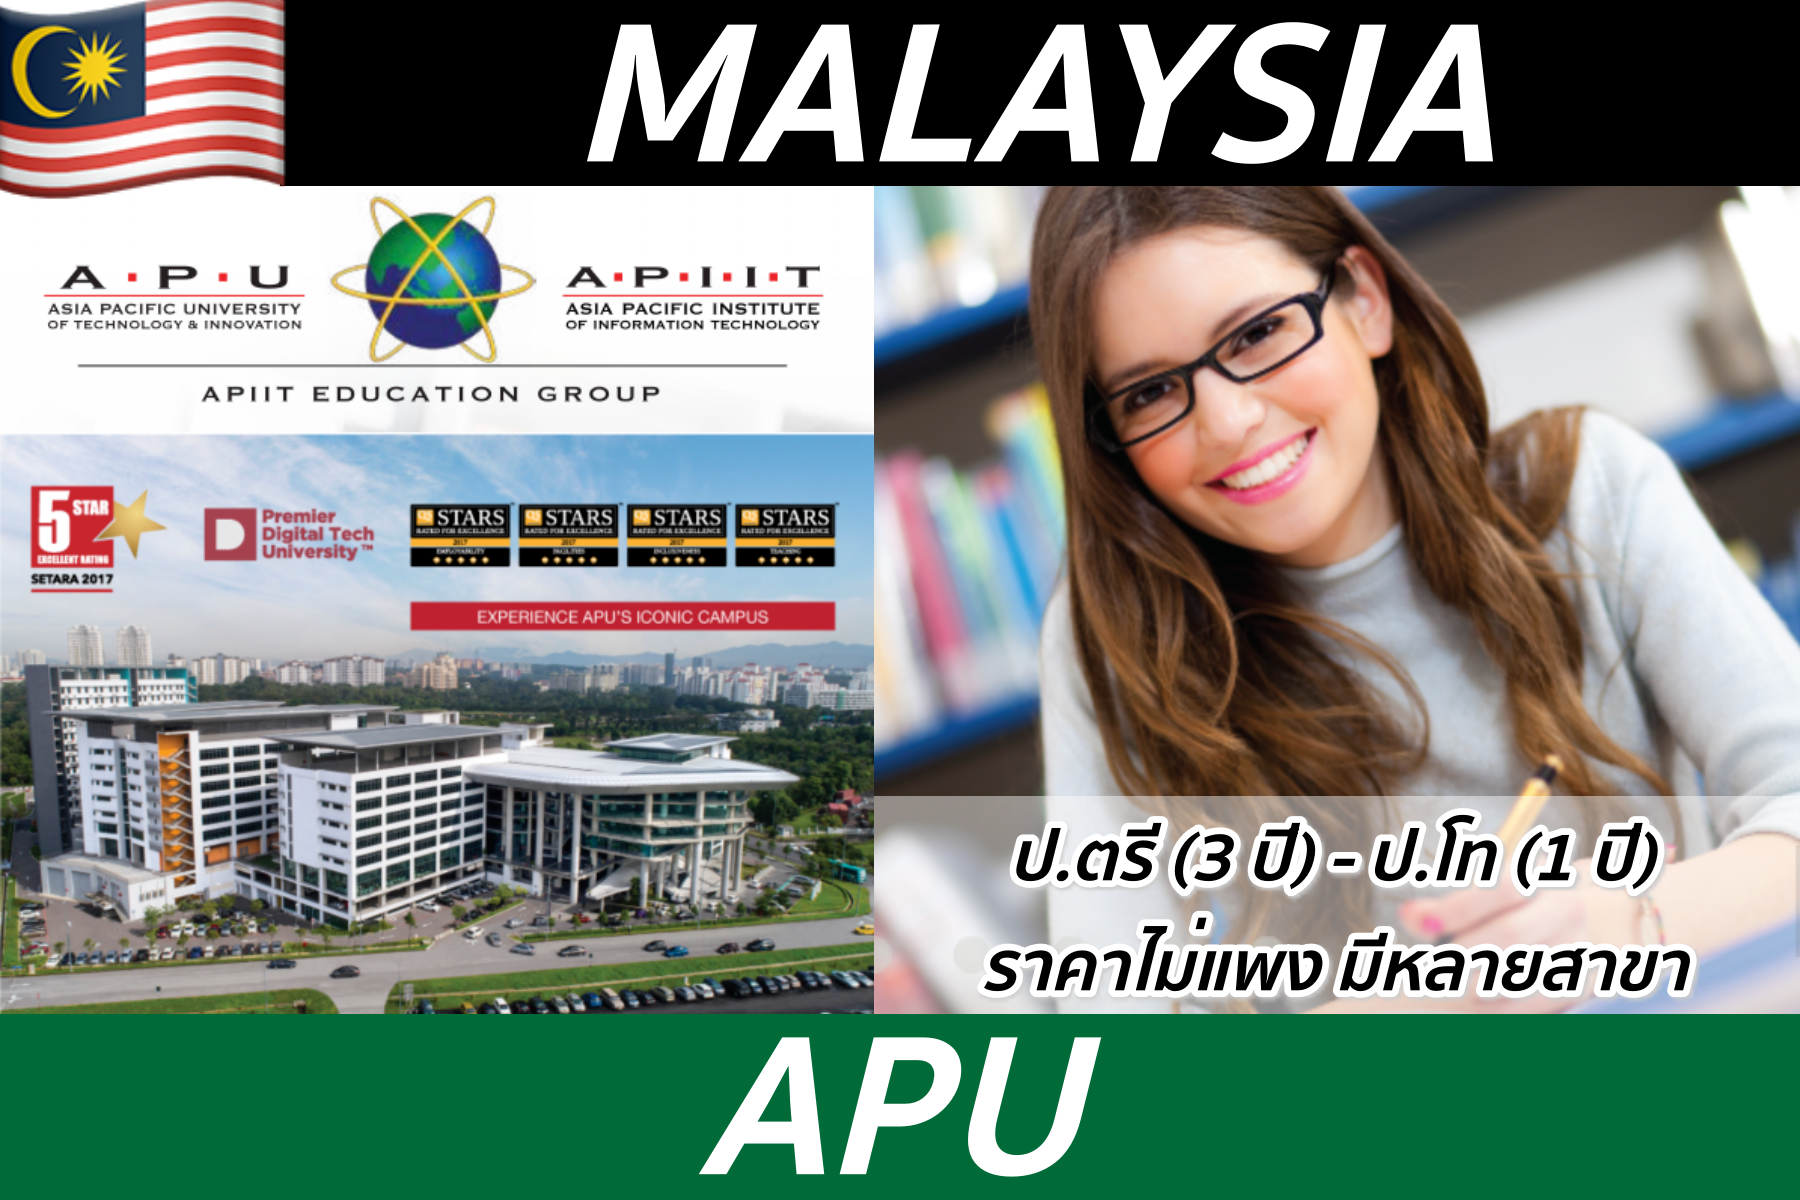 ป.ตรี-ป.โทที่ APU, Malaysia มีหลายสาขาให้เลือกเรียน ราคาไม่แพง นร.ไทยน้อย